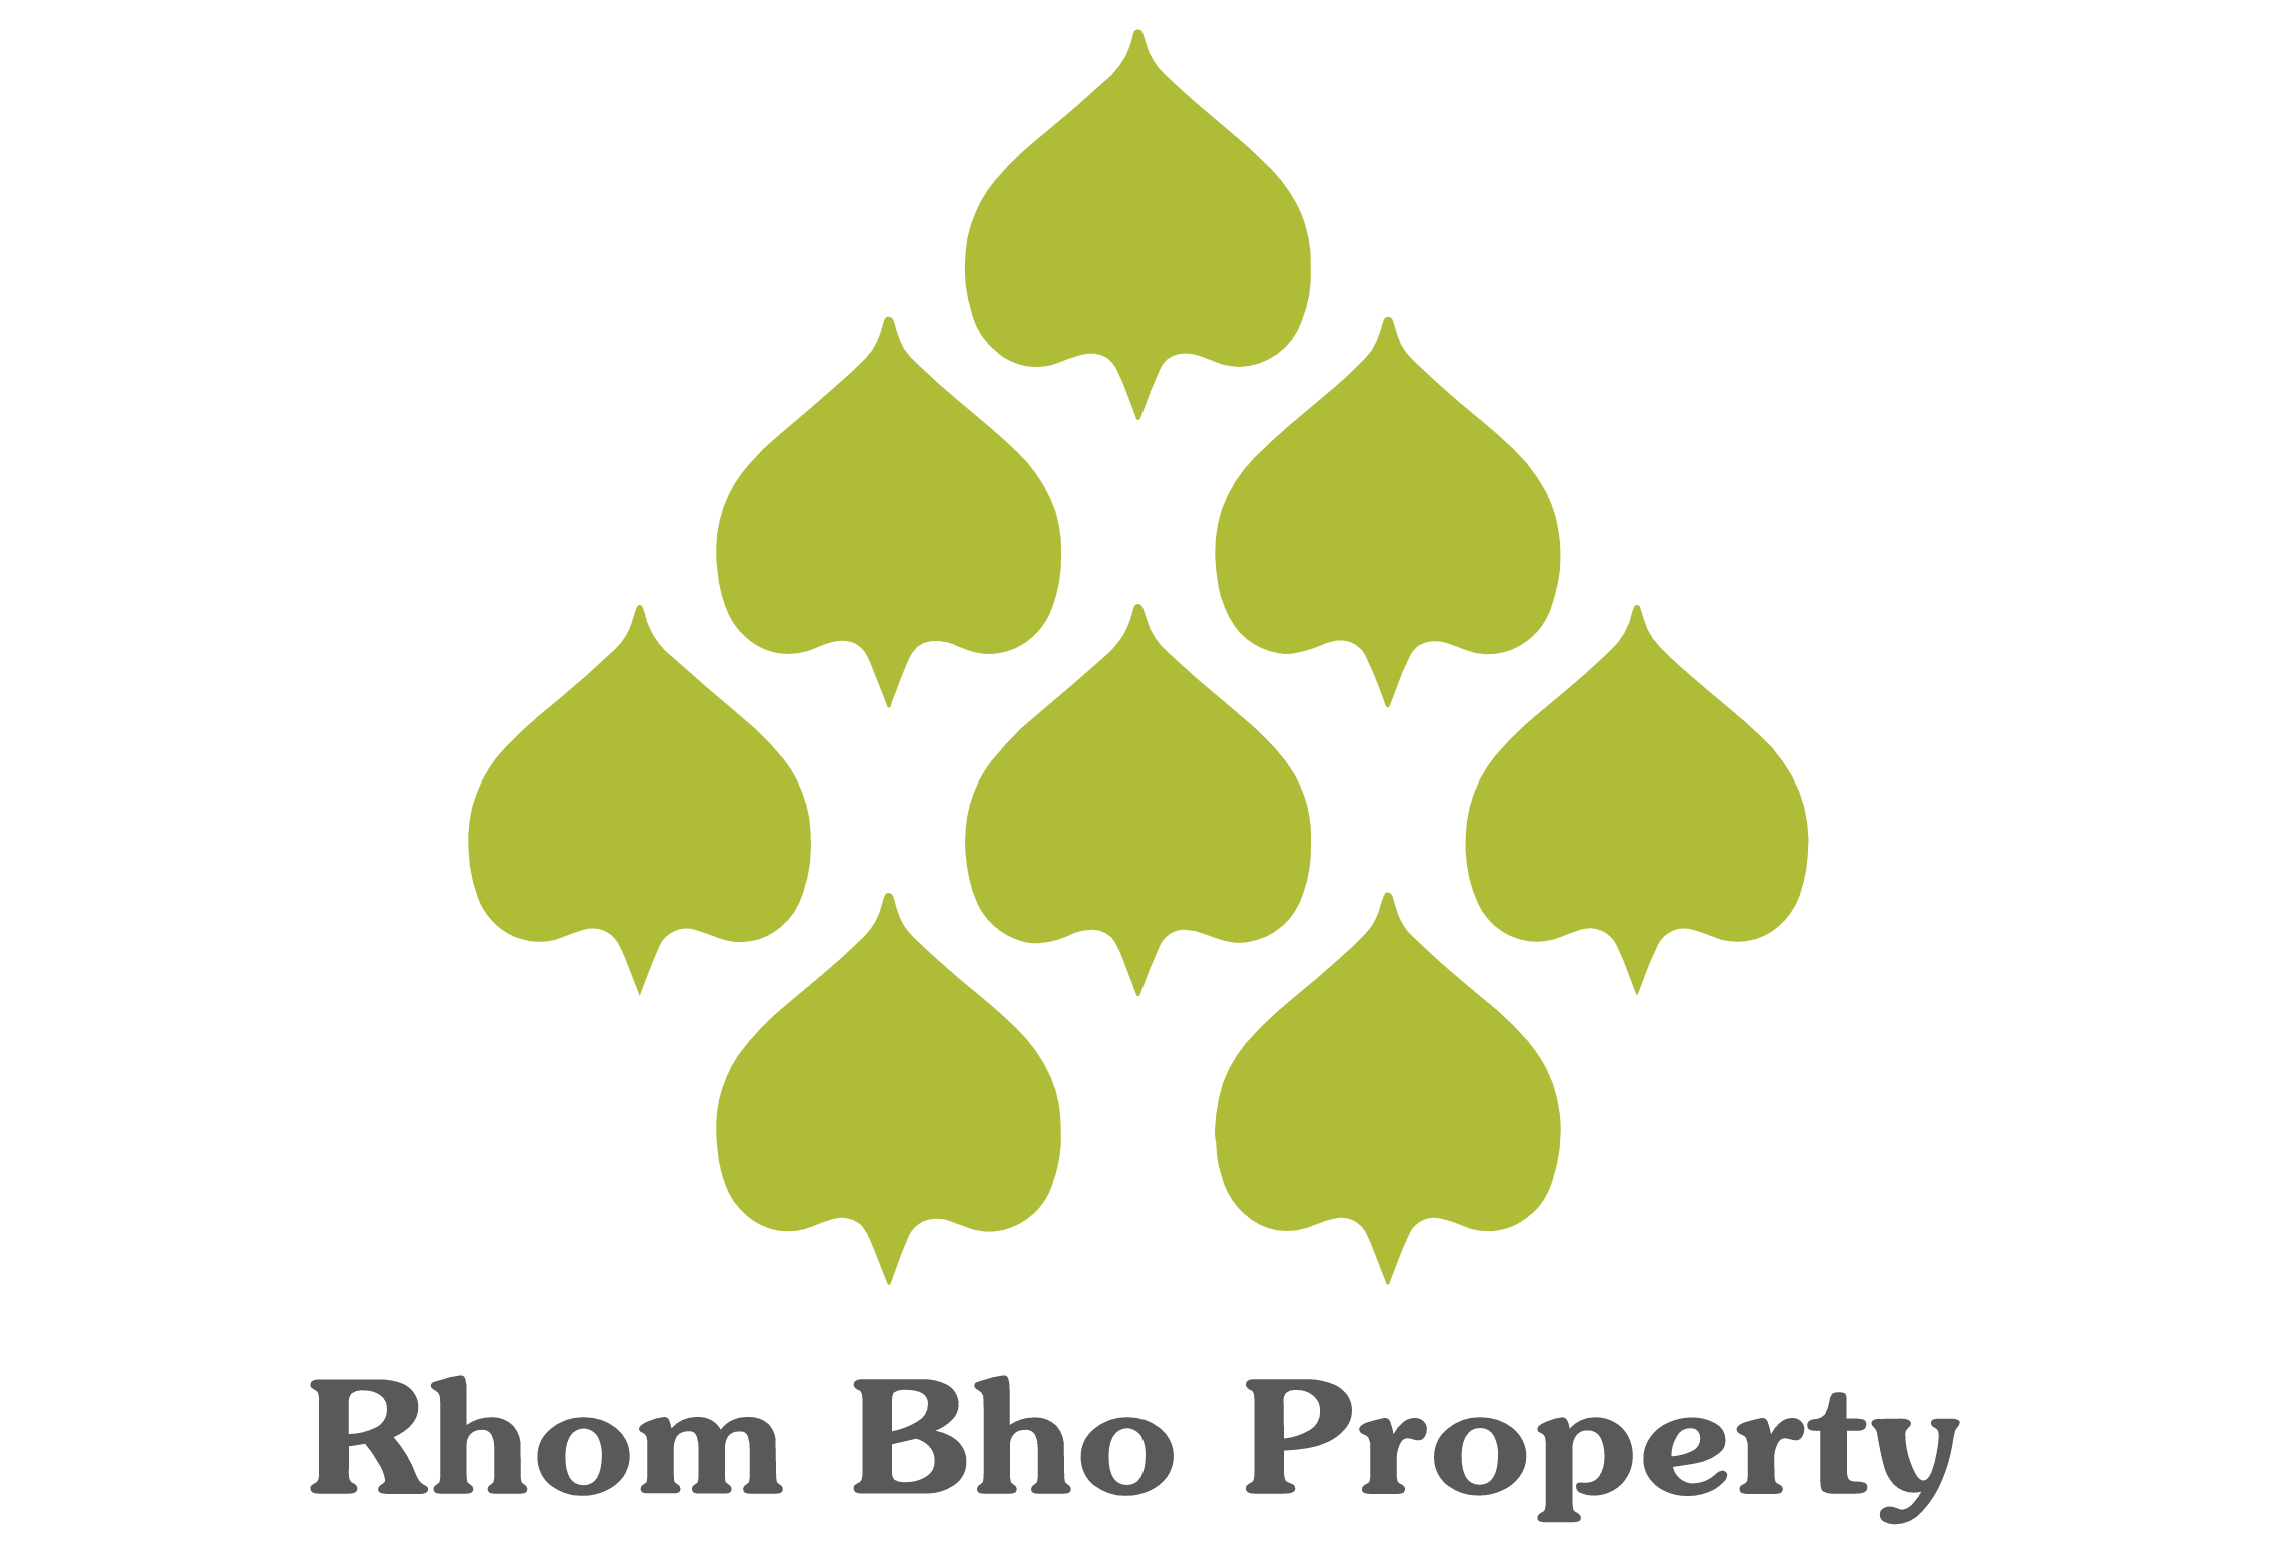 Rhom Bho Property logo